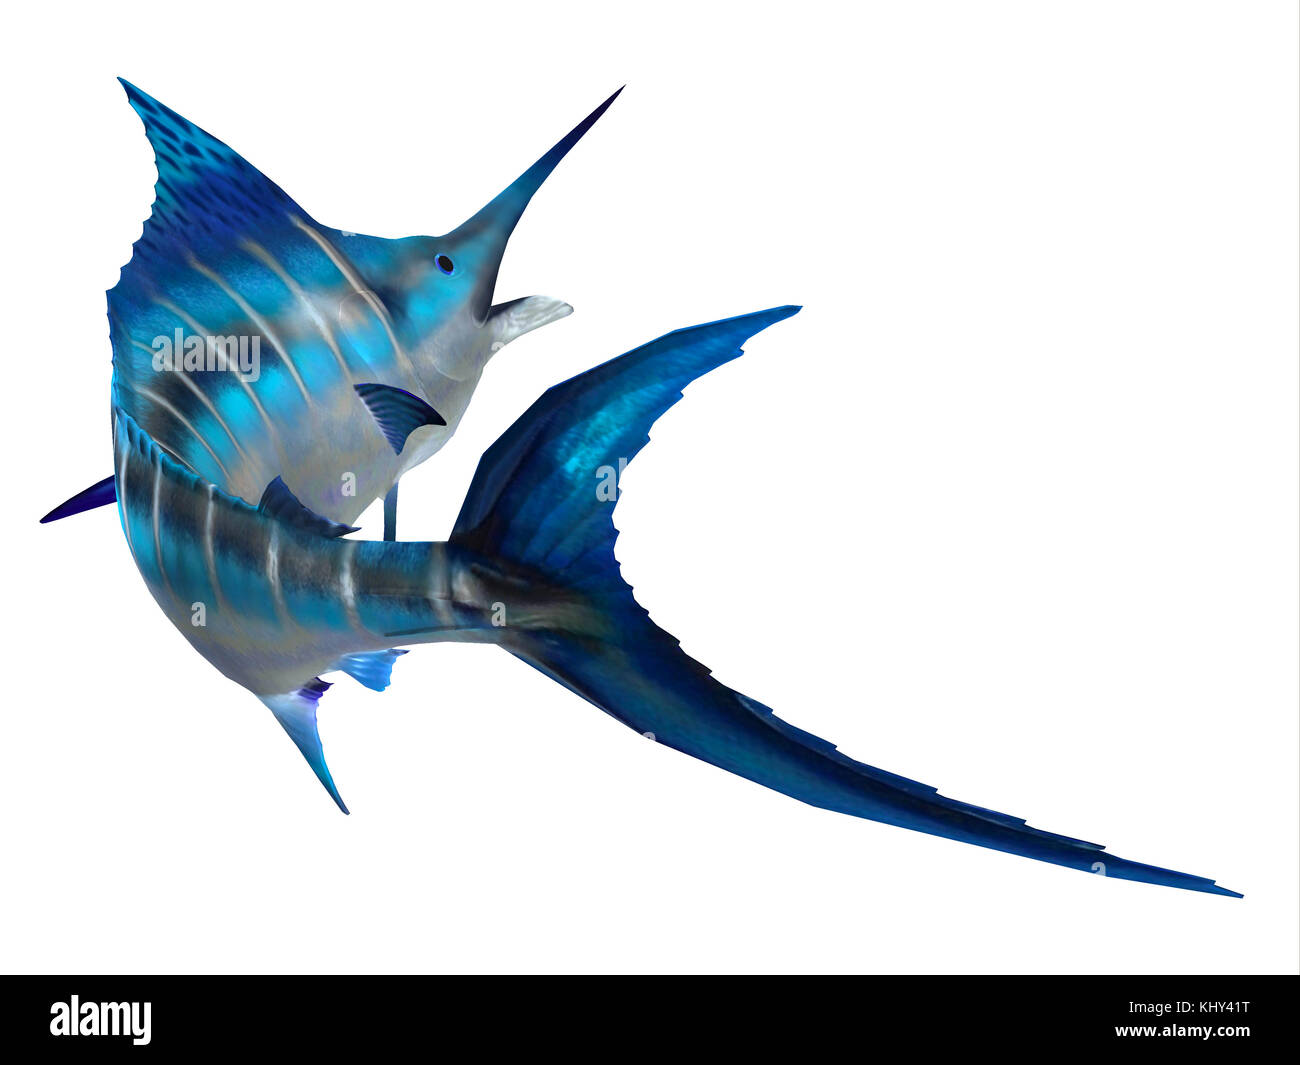 Queue de poisson Marlin - Le marlin bleu de l'Atlantique est le plus grand des poissons osseux et est un jeu populaire de poissons dans l'océan Atlantique. Banque D'Images